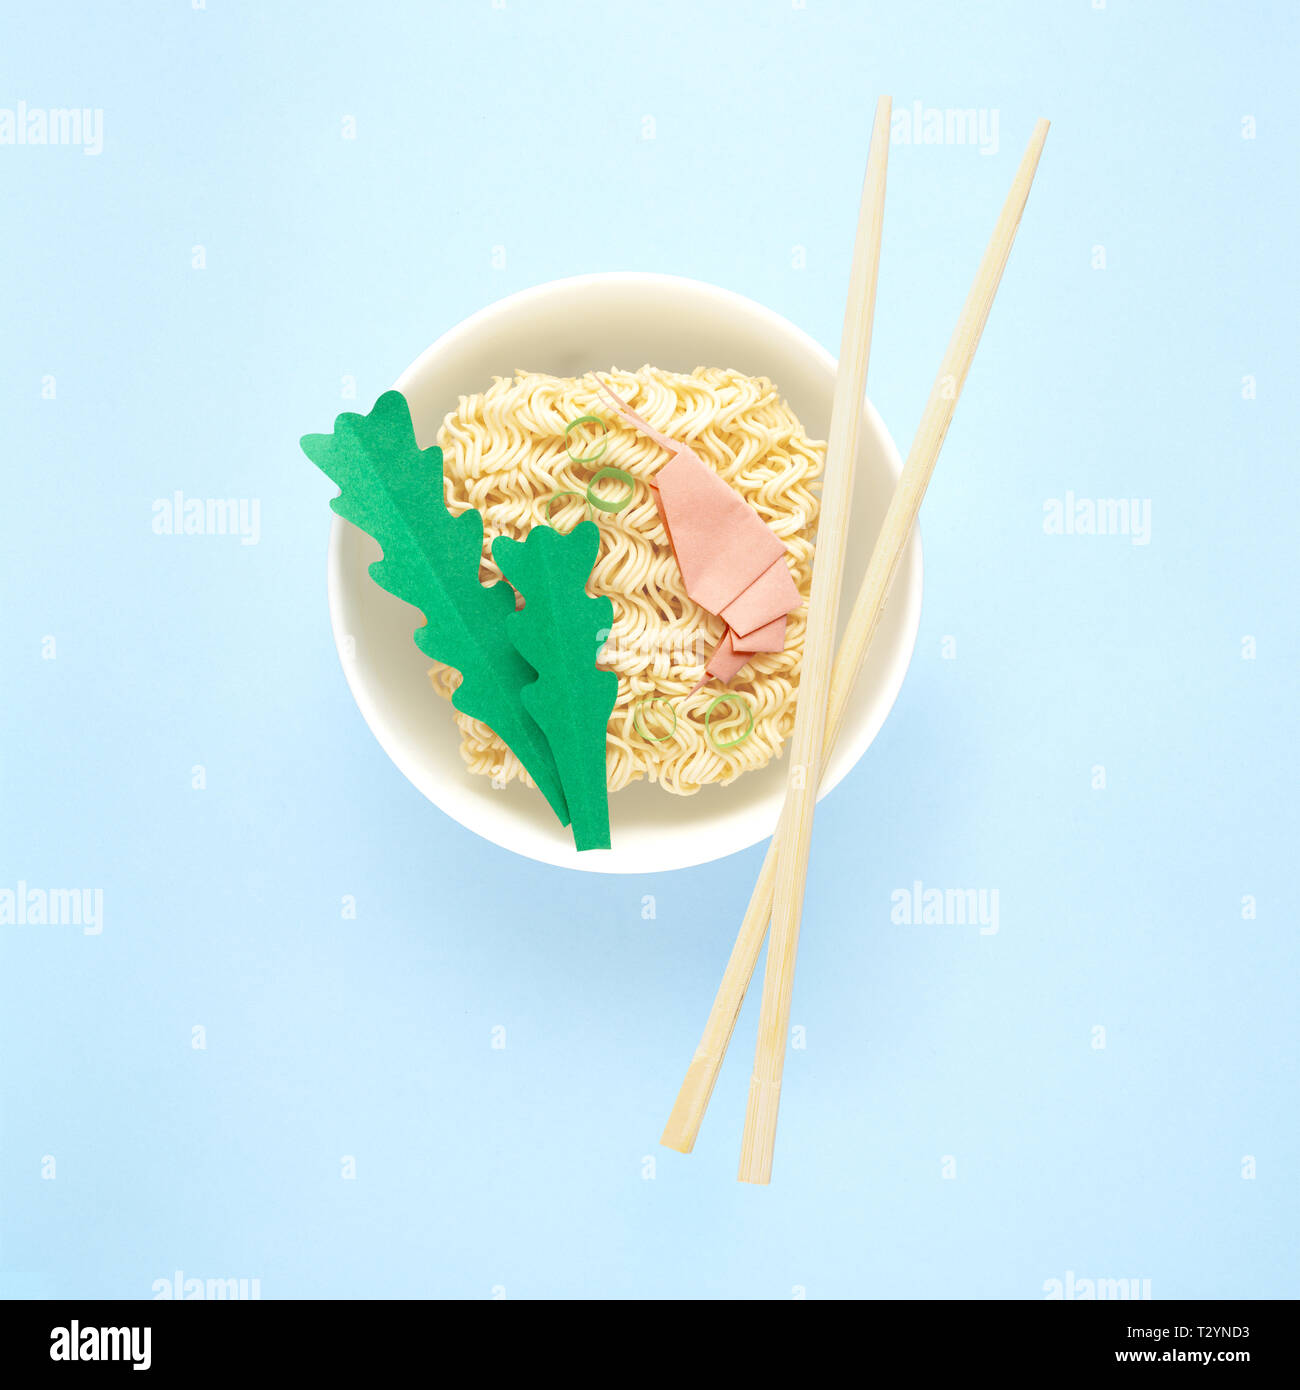 Kreative Ernährung Gesunde Ernährung Konzept Foto von lecker Ramen Nudeln Nudeln mit Garnelen grünen Stäbchen und Schüssel auf blauem Hintergrund. Stockfoto